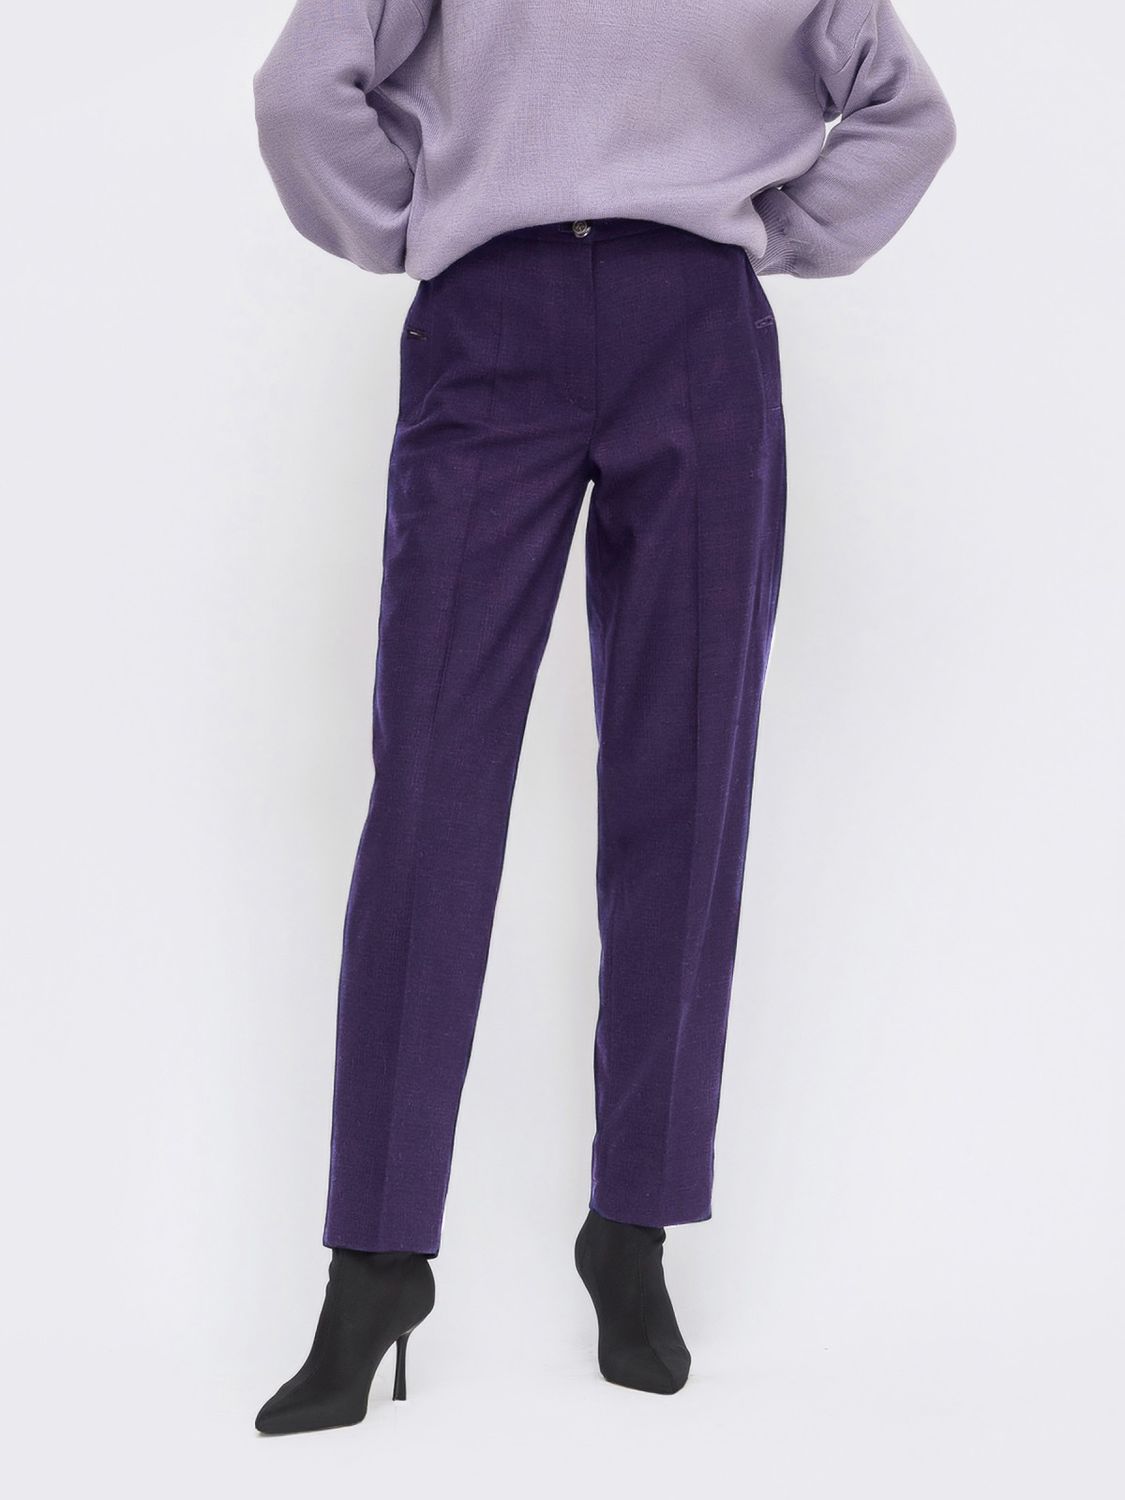 Класичні штани в клітинку зі фіолетовими стрілками - фото